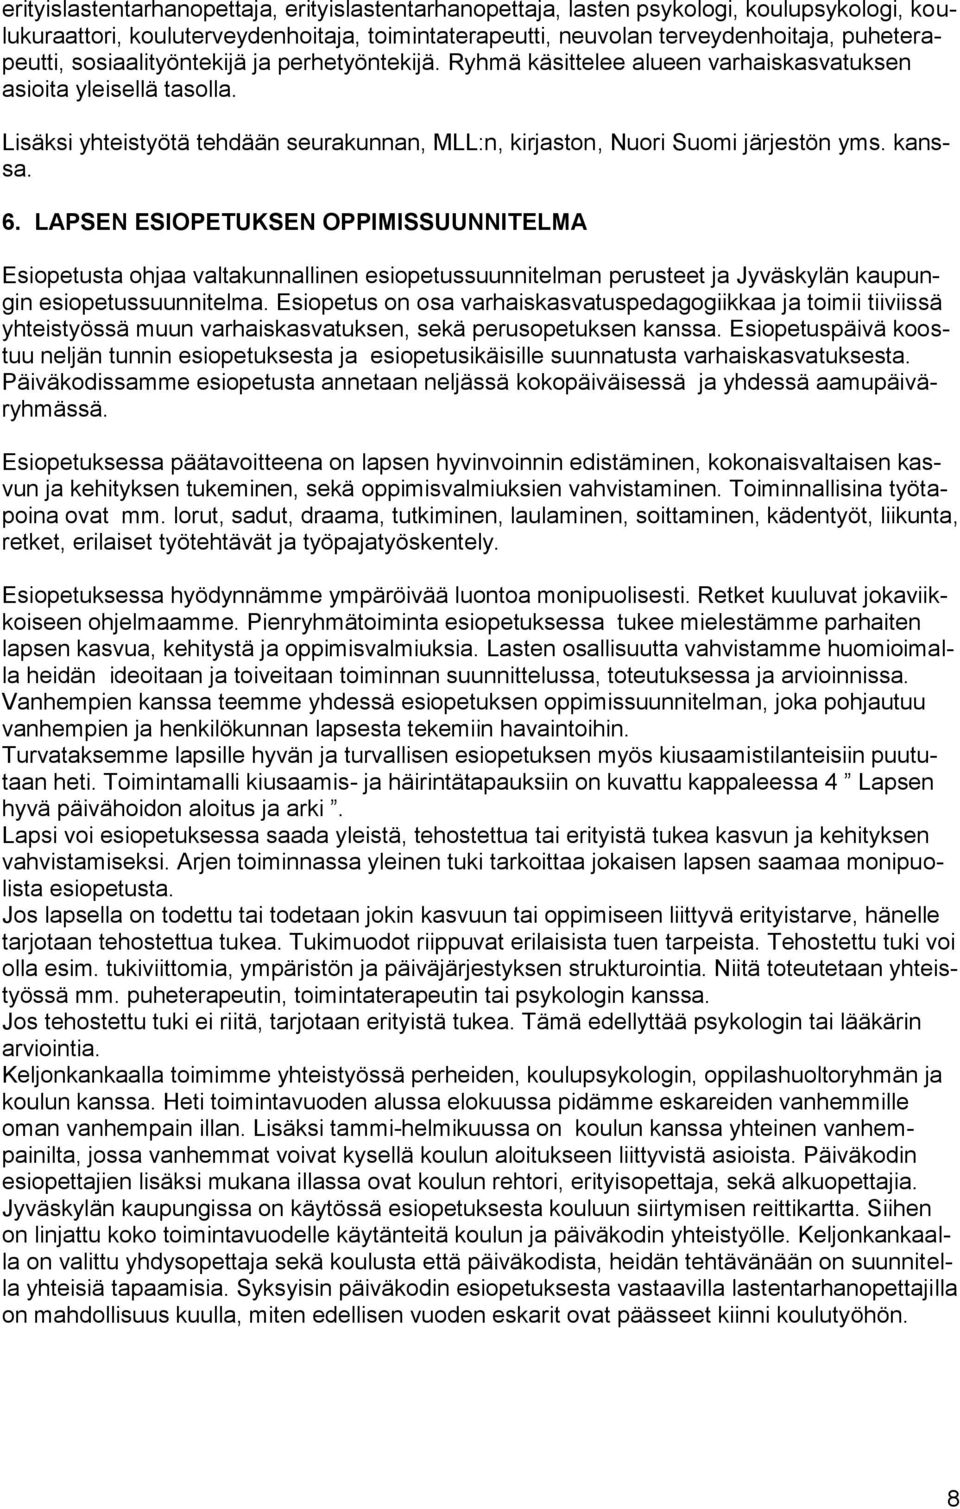 kanssa. 6. LAPSEN ESIOPETUKSEN OPPIMISSUUNNITELMA Esiopetusta ohjaa valtakunnallinen esiopetussuunnitelman perusteet ja Jyväskylän kaupungin esiopetussuunnitelma.